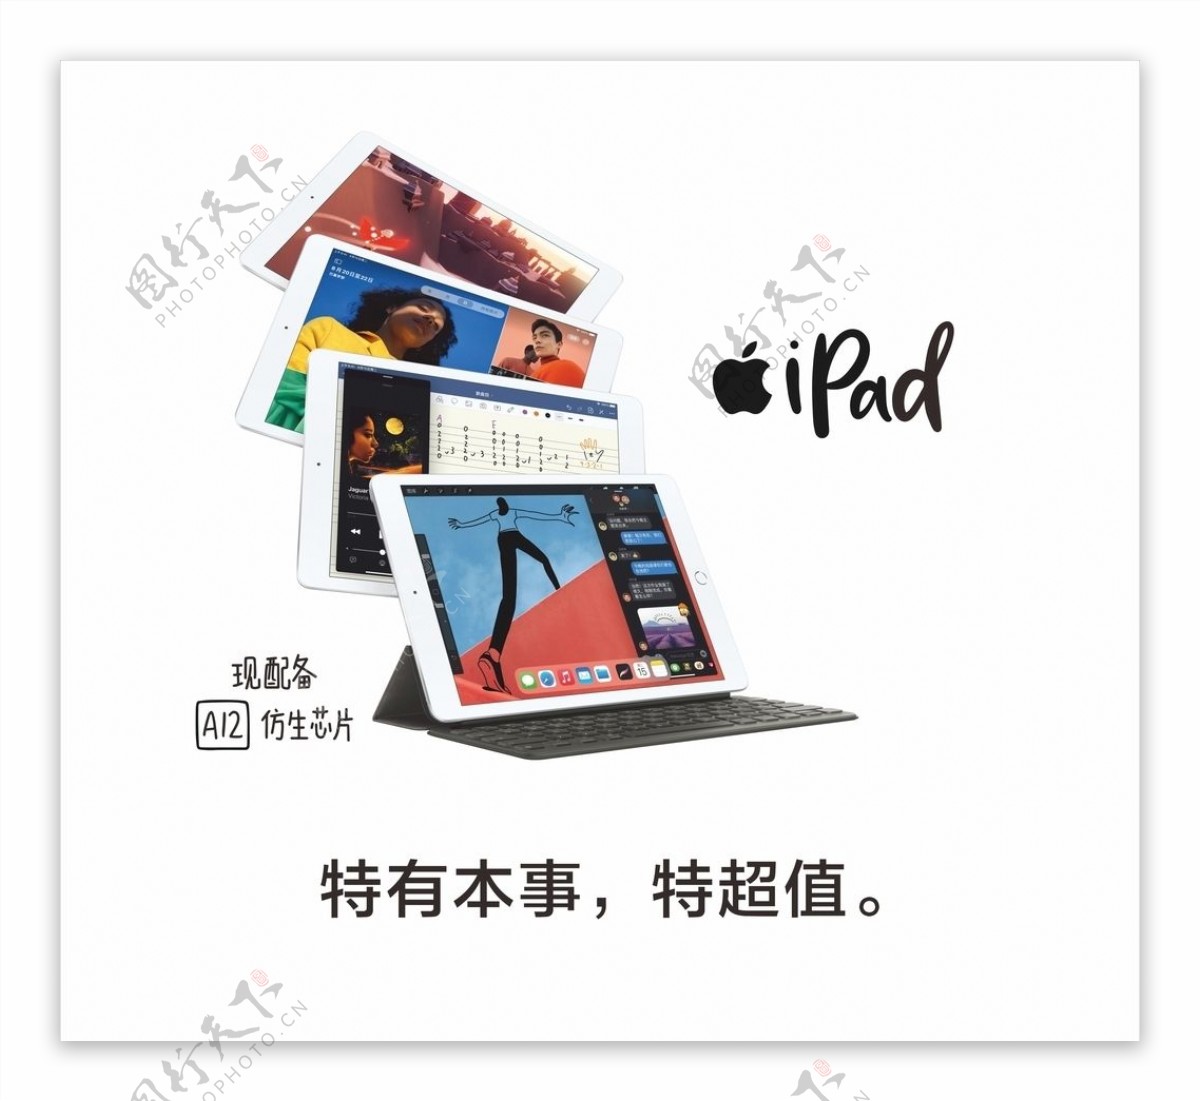 ipadAir苹果平板新款图片